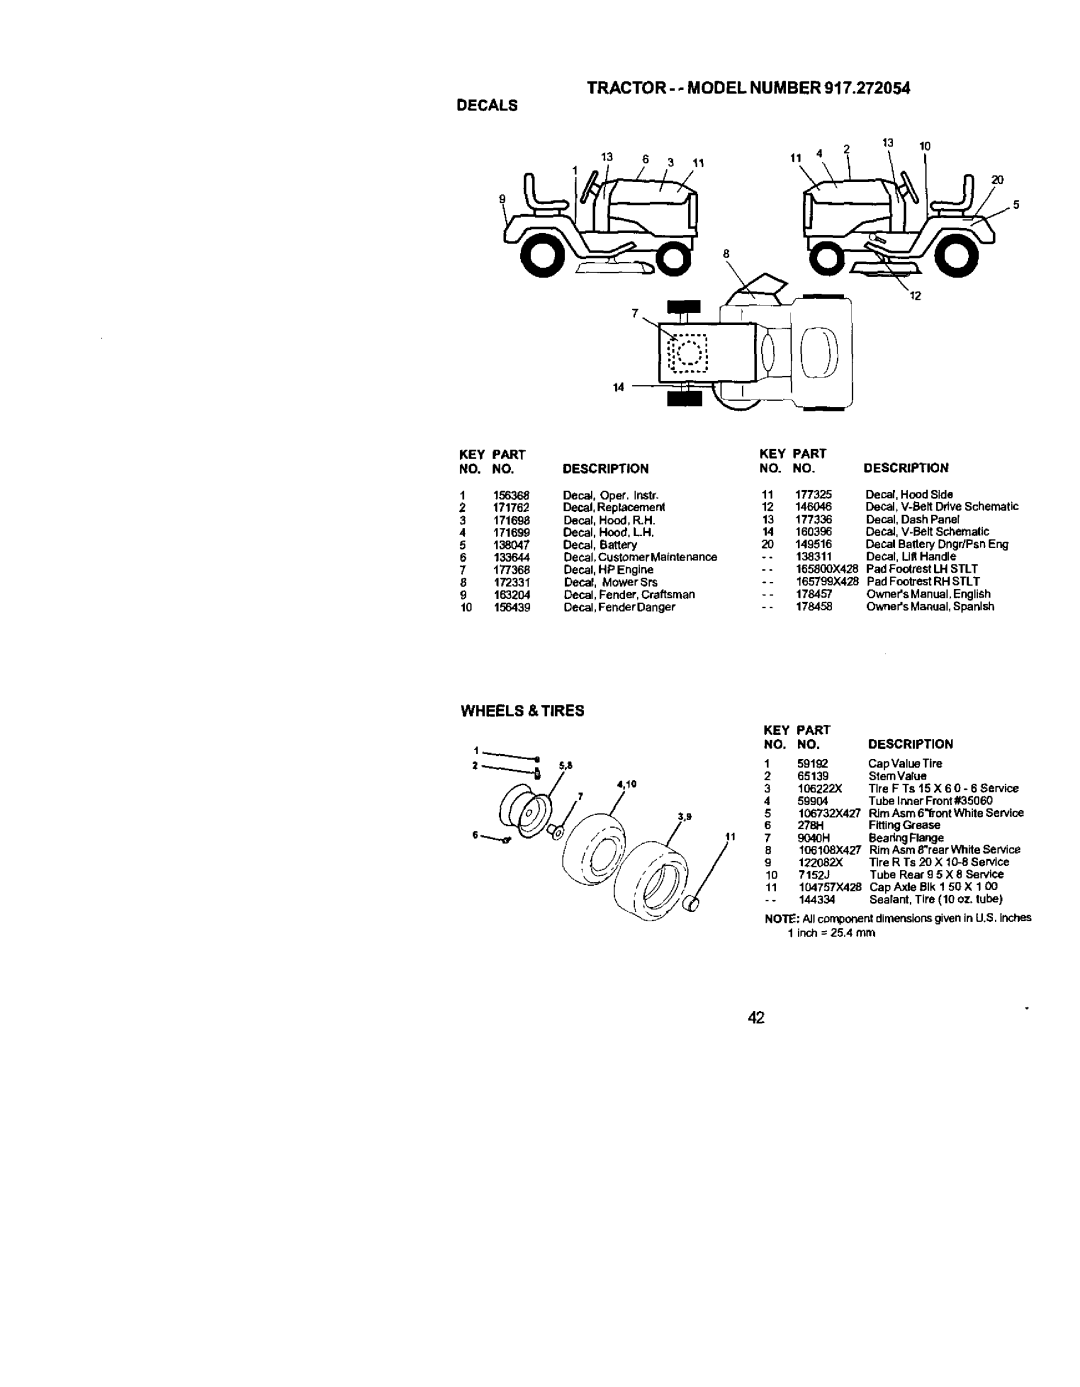 Craftsman 917.272054 owner manual Tractor- - Model Number Decals, DecaJ, V-Belt Schematic, 99904 